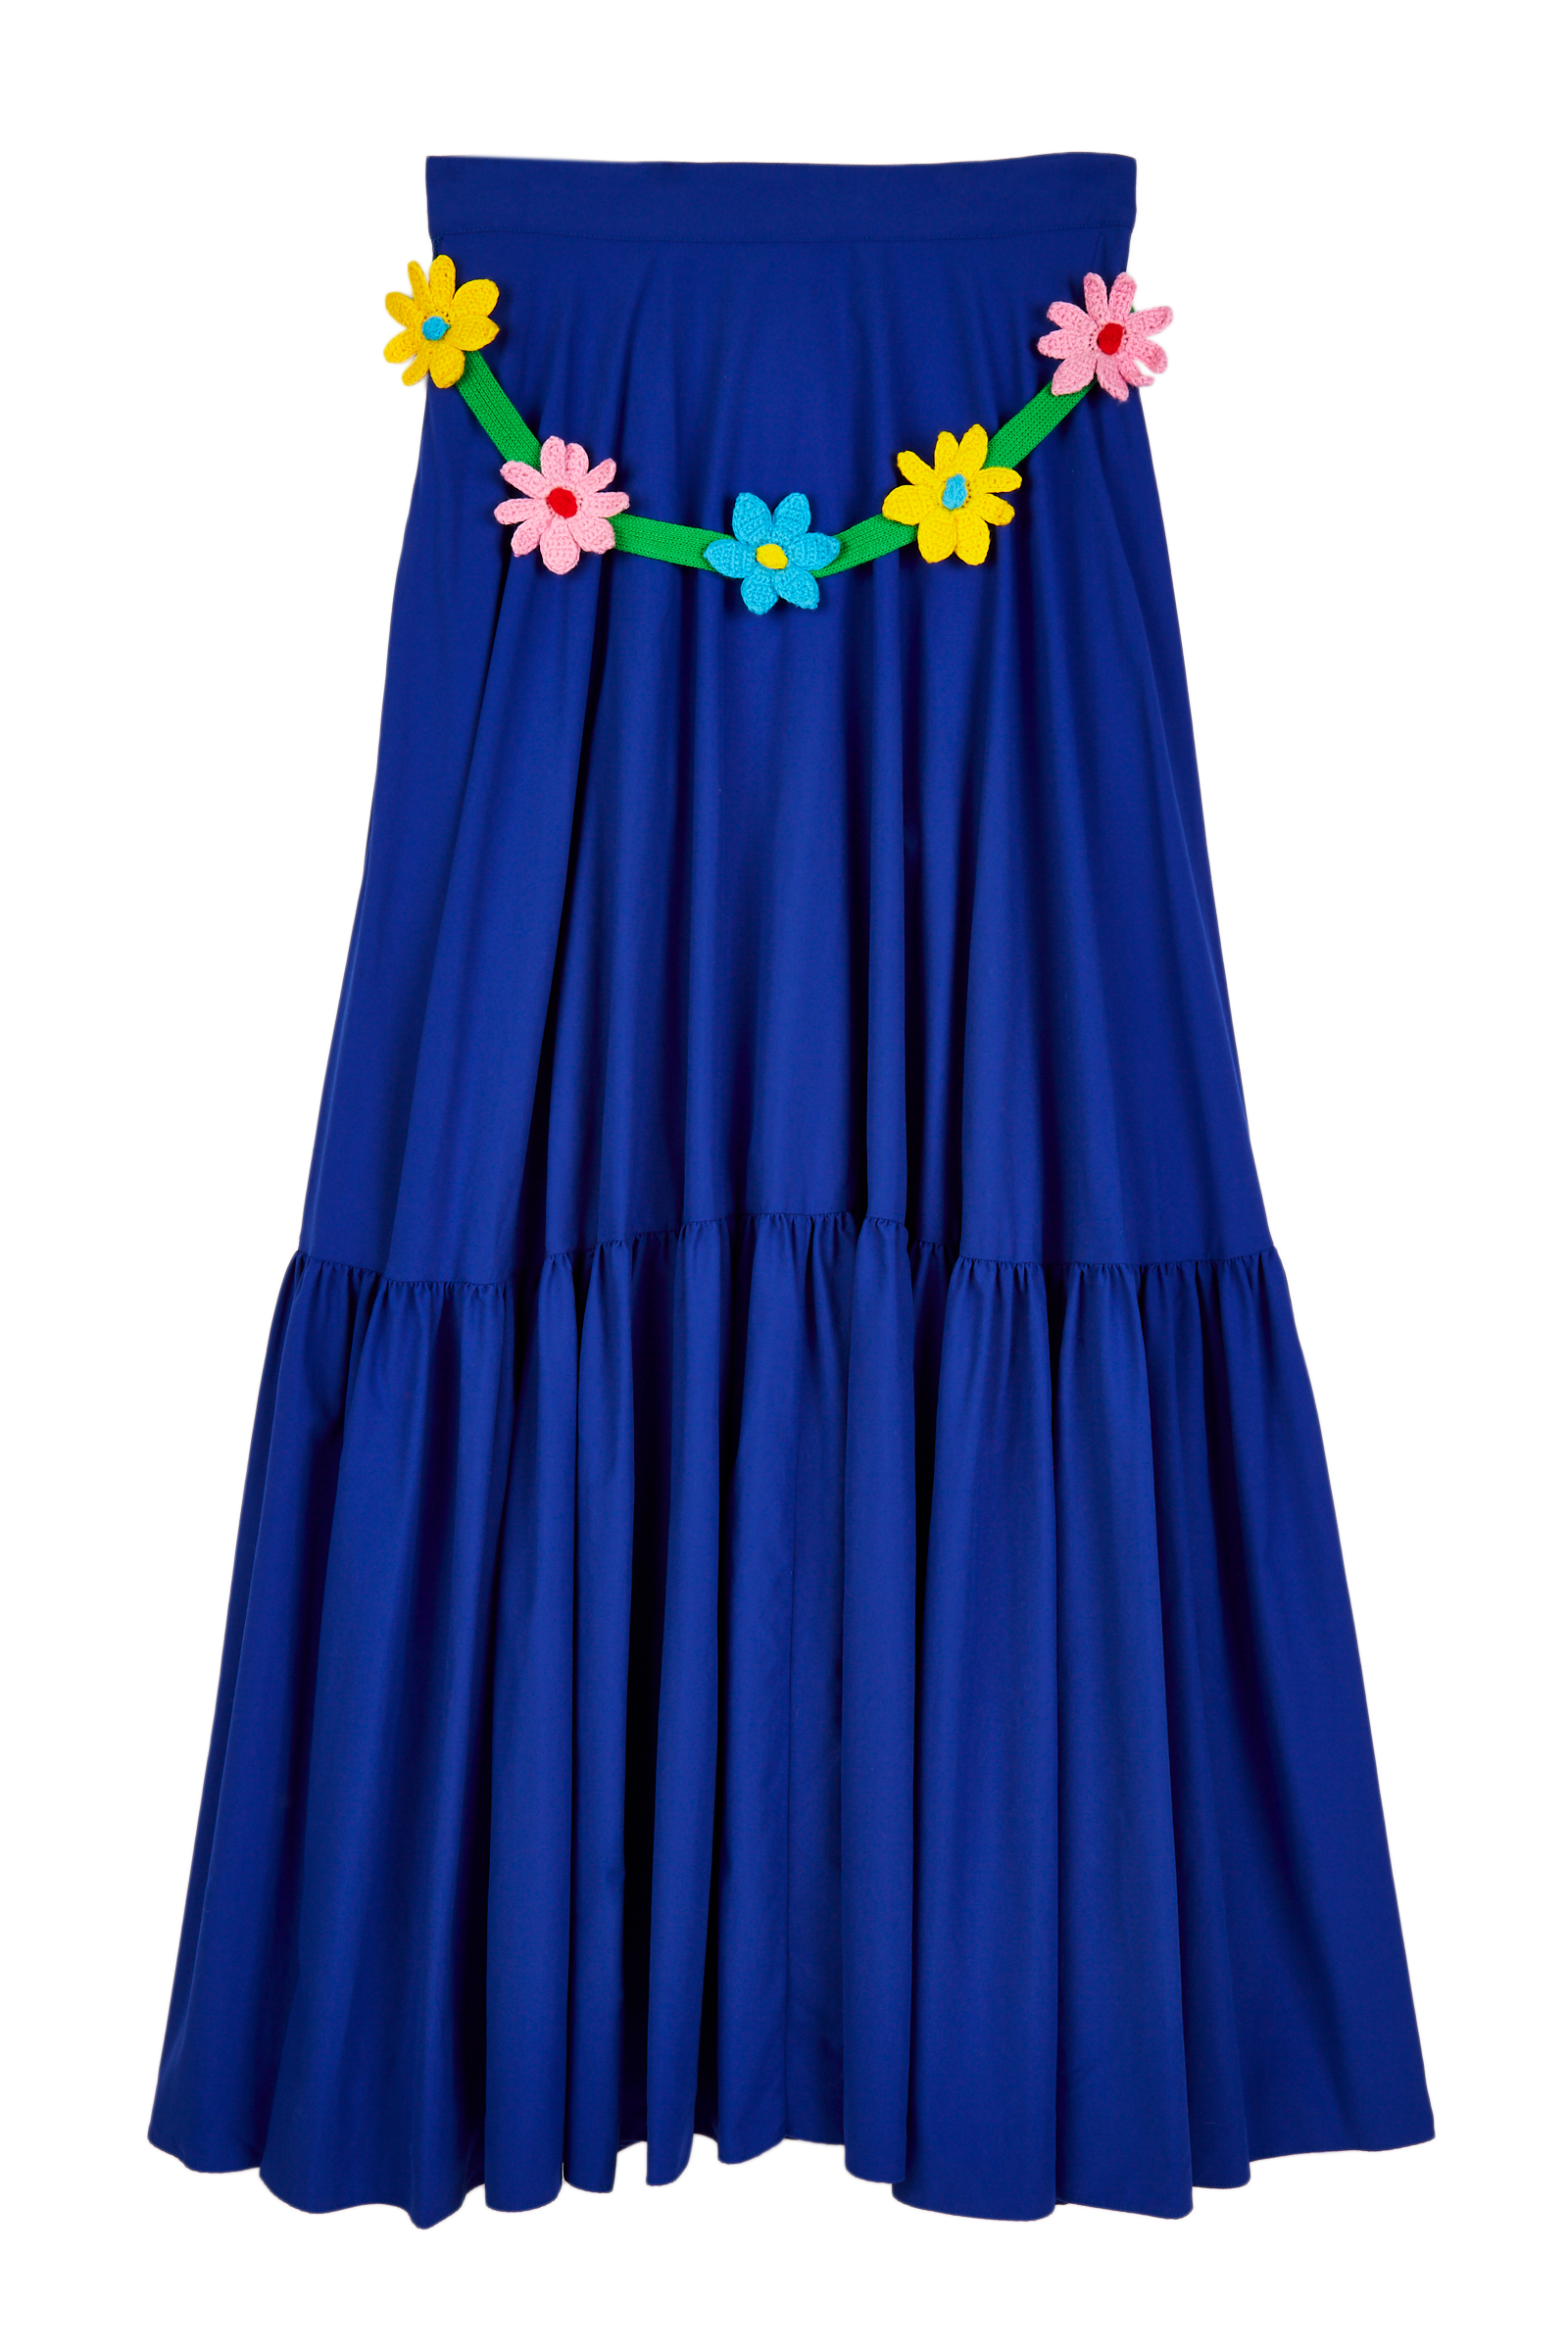 Flower Belt Technical Skirt 